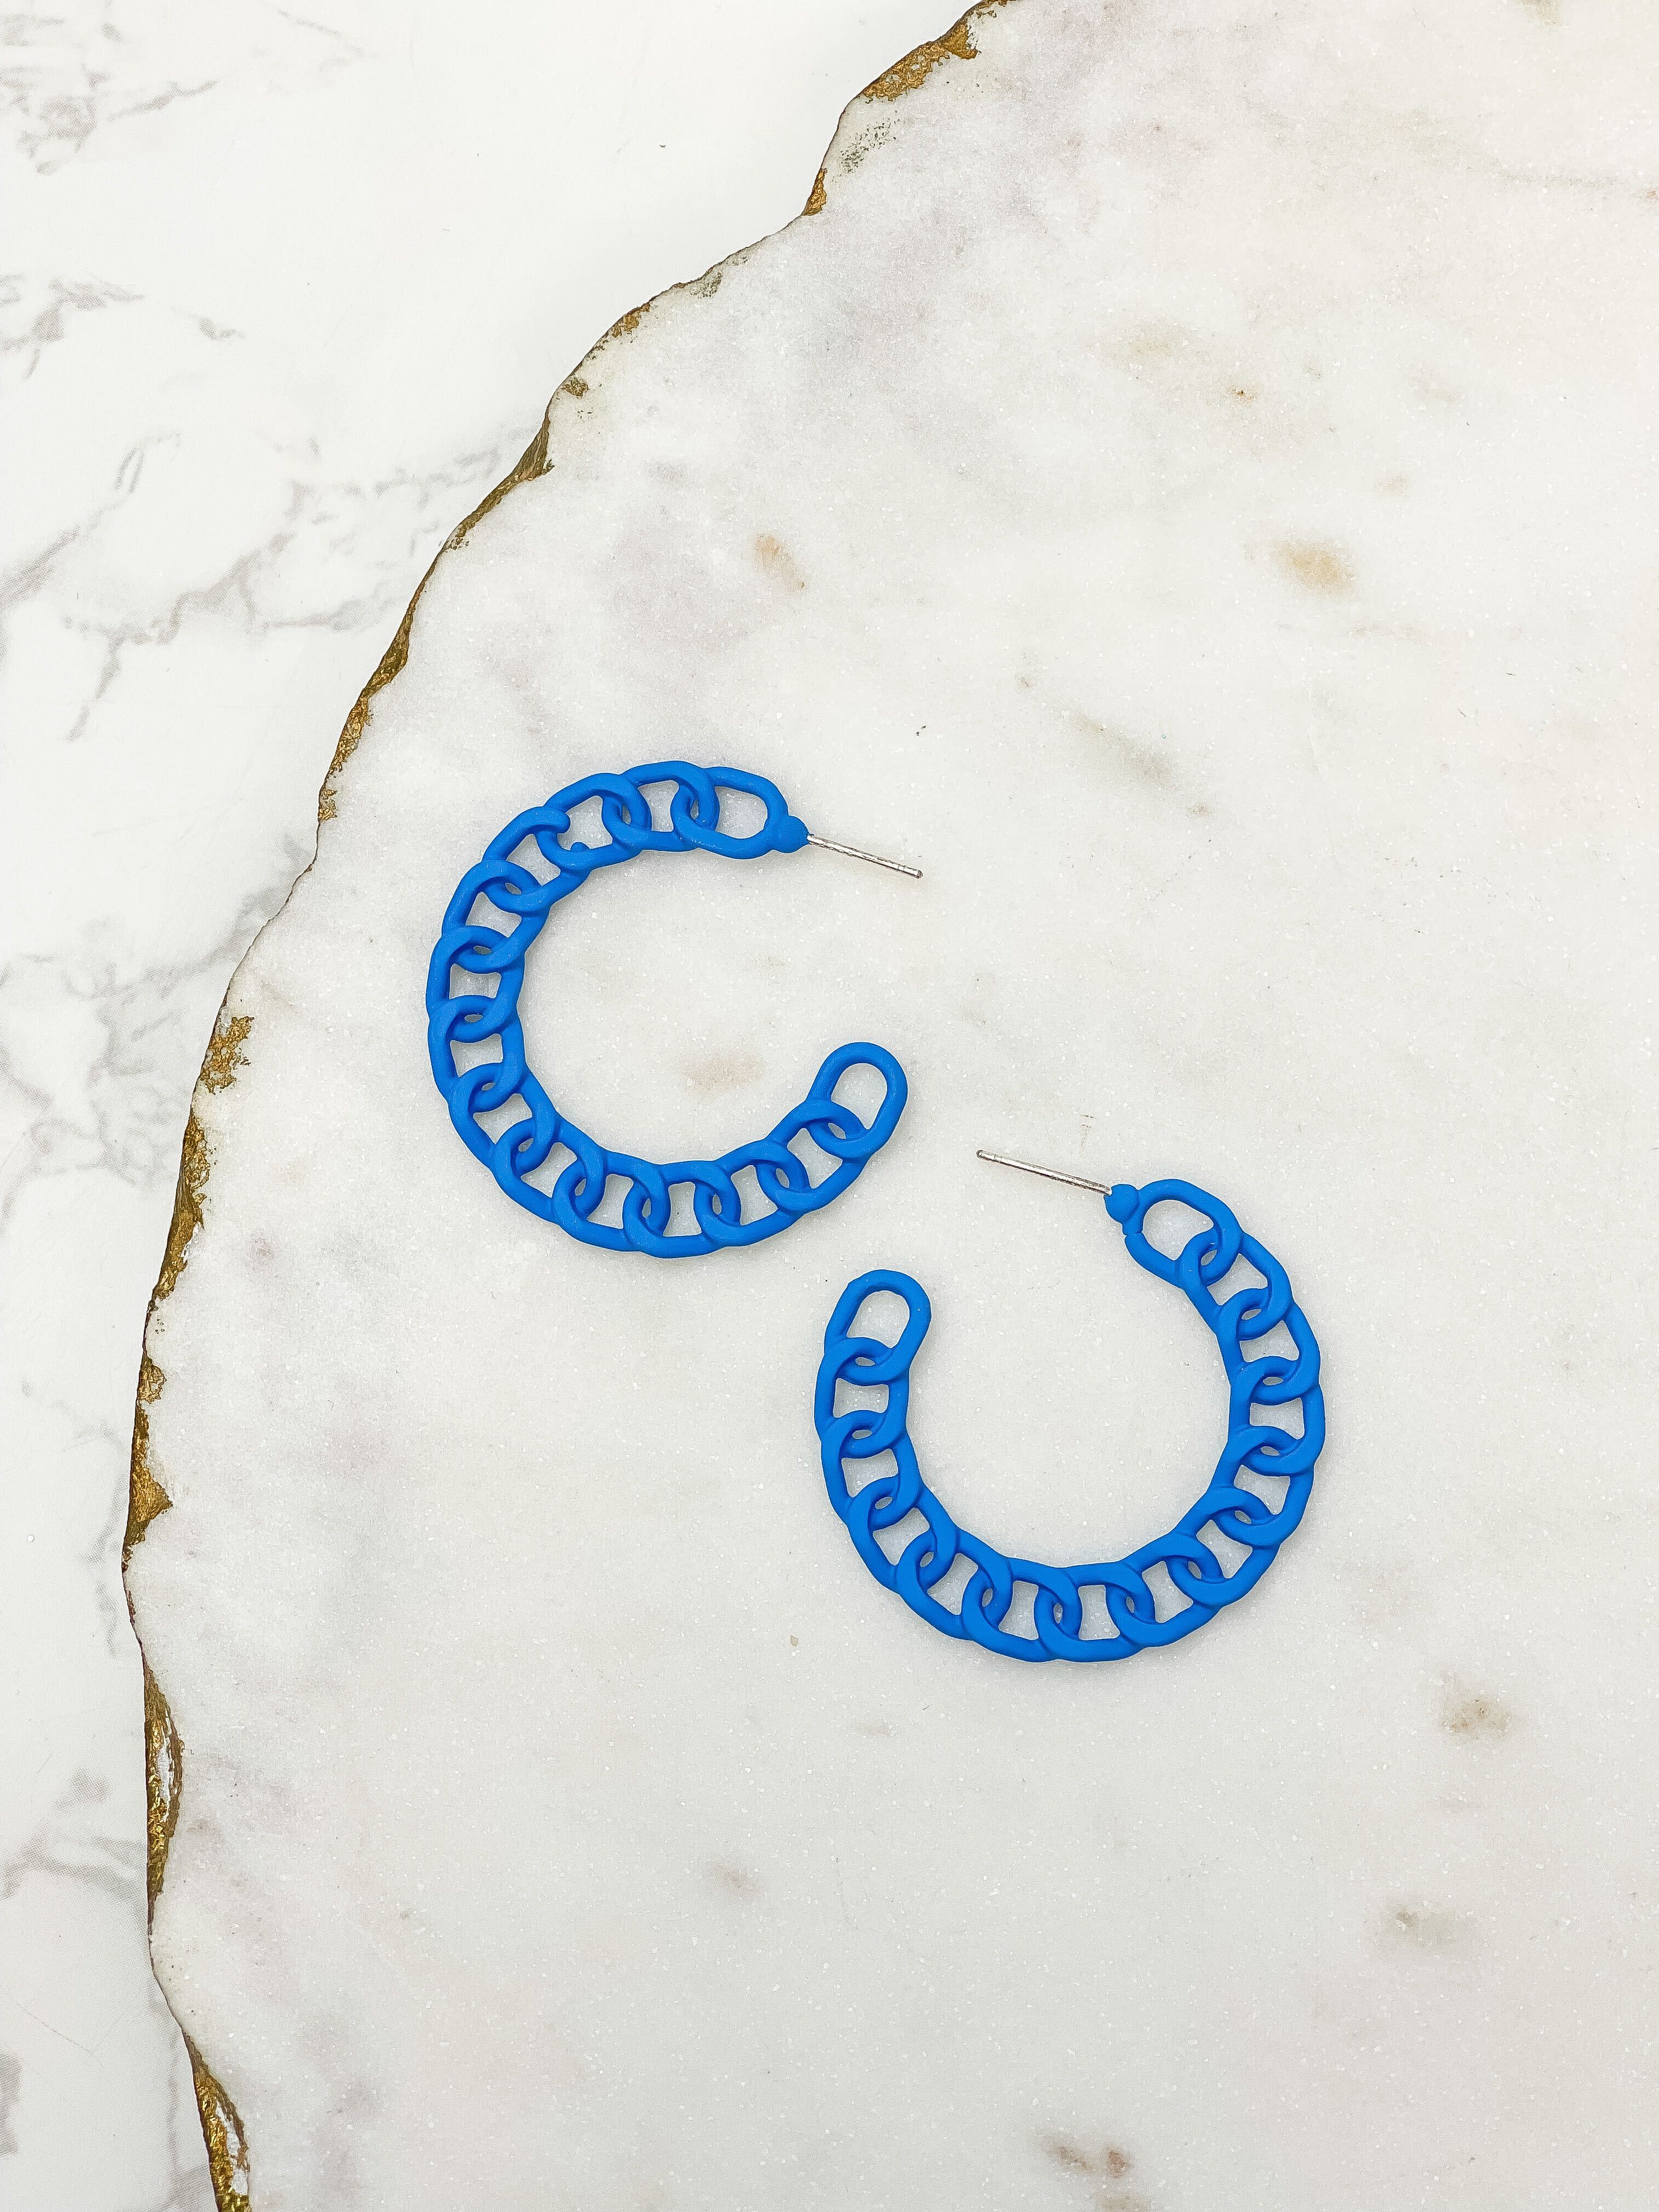 Painted Metal Chain Hoop Earrings - Blue